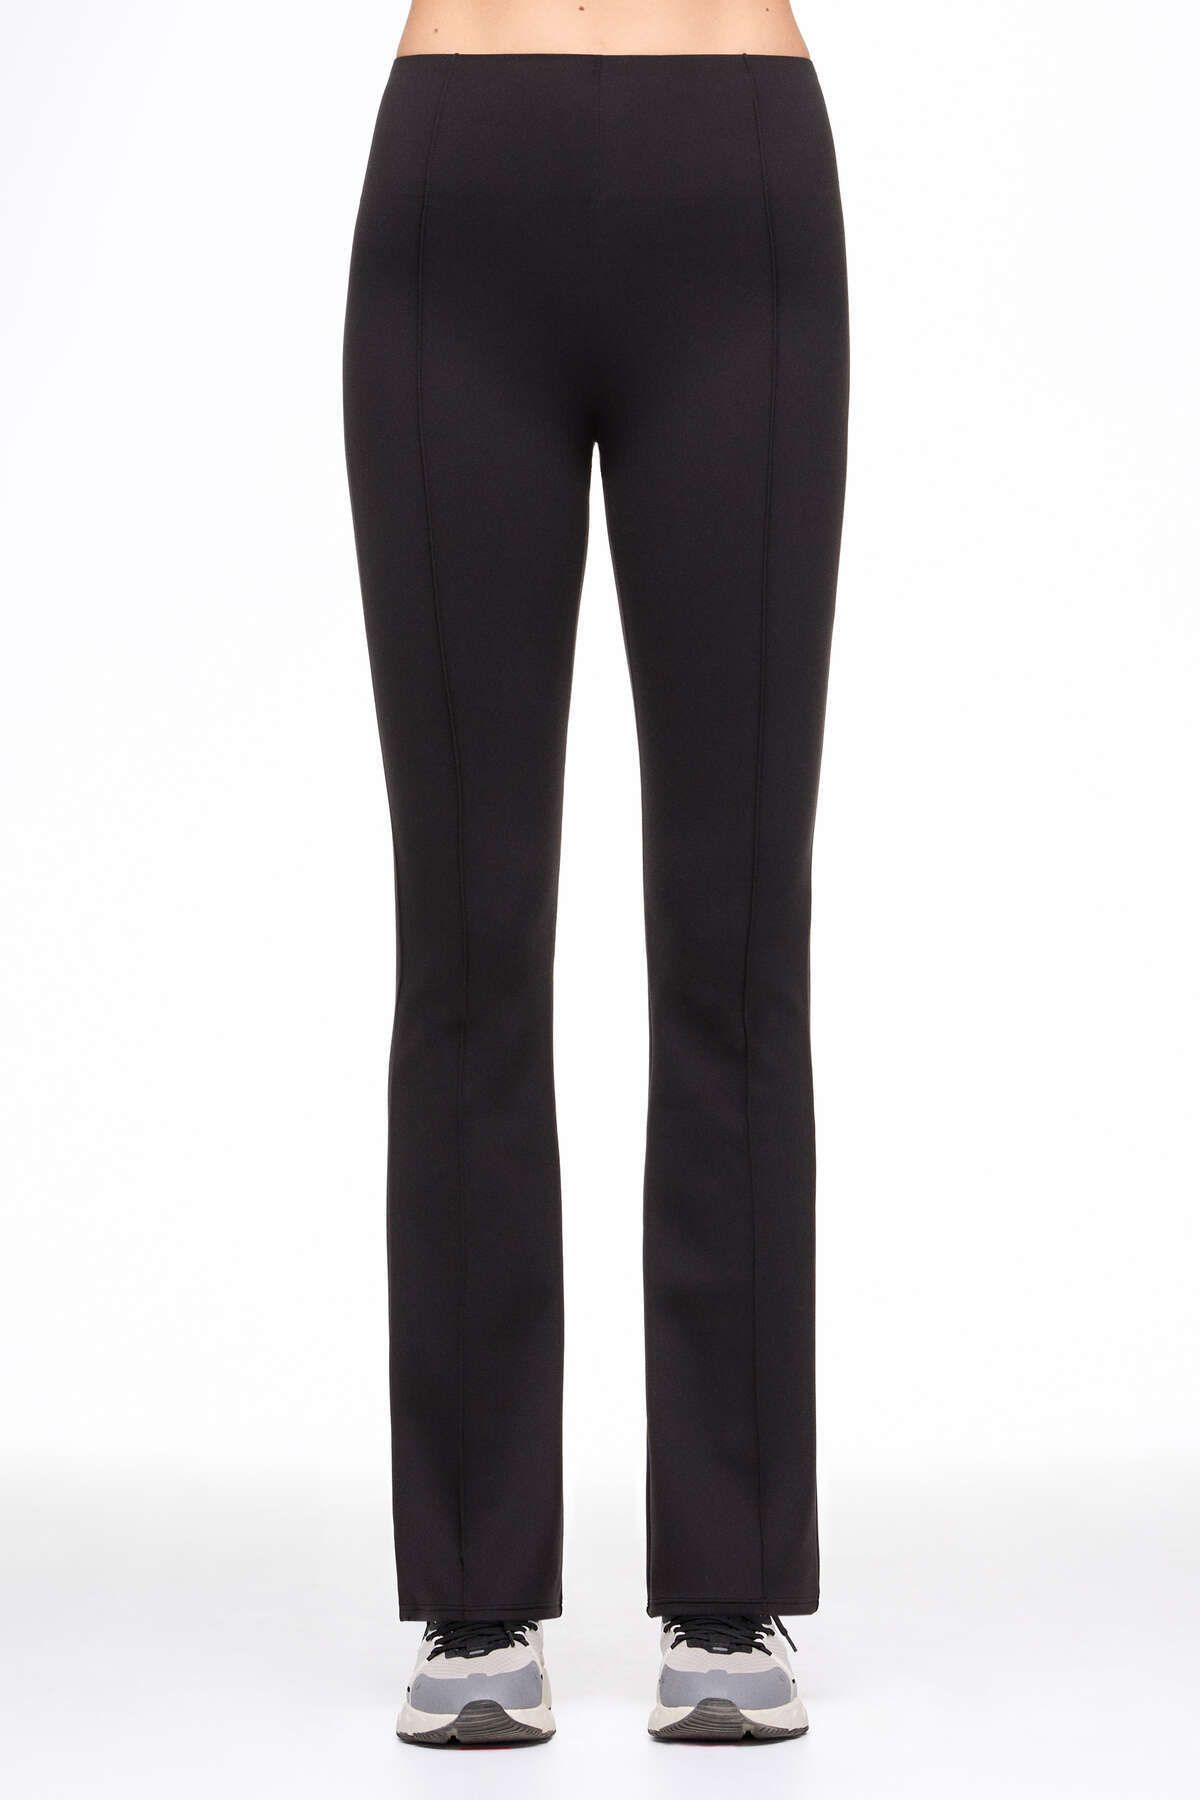 Oysho Perfect-adapt 80 cm flare pantolon Fiyatı, Yorumları - Trendyol